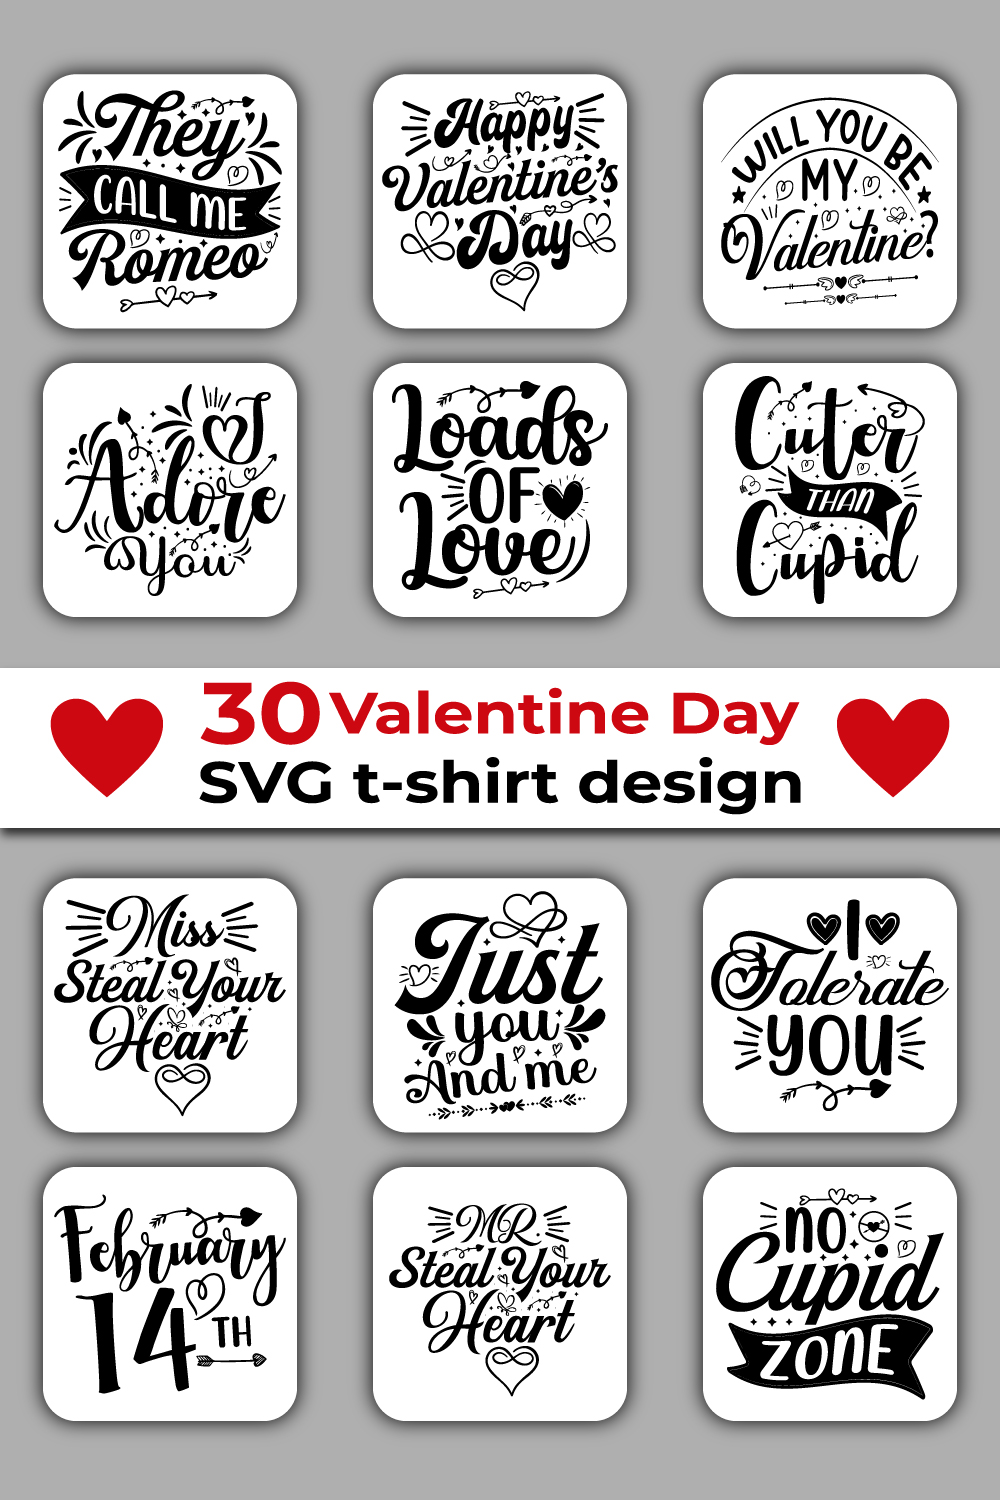 T-shirt Valentine's Day SVG Design Bundle pinterest image.